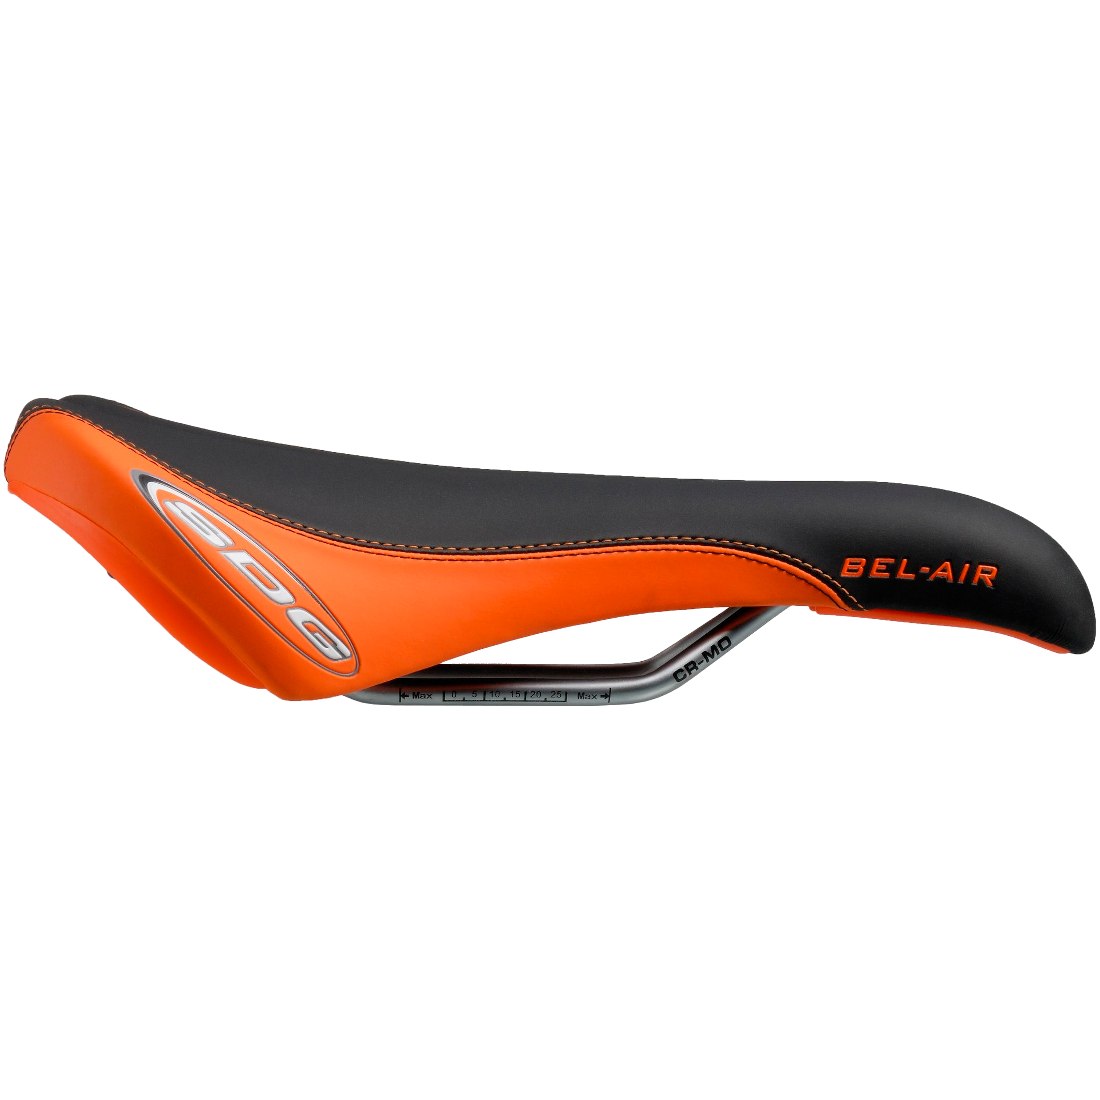 Productfoto van SDG Bel-Air RL CroMo Saddle - black/orange